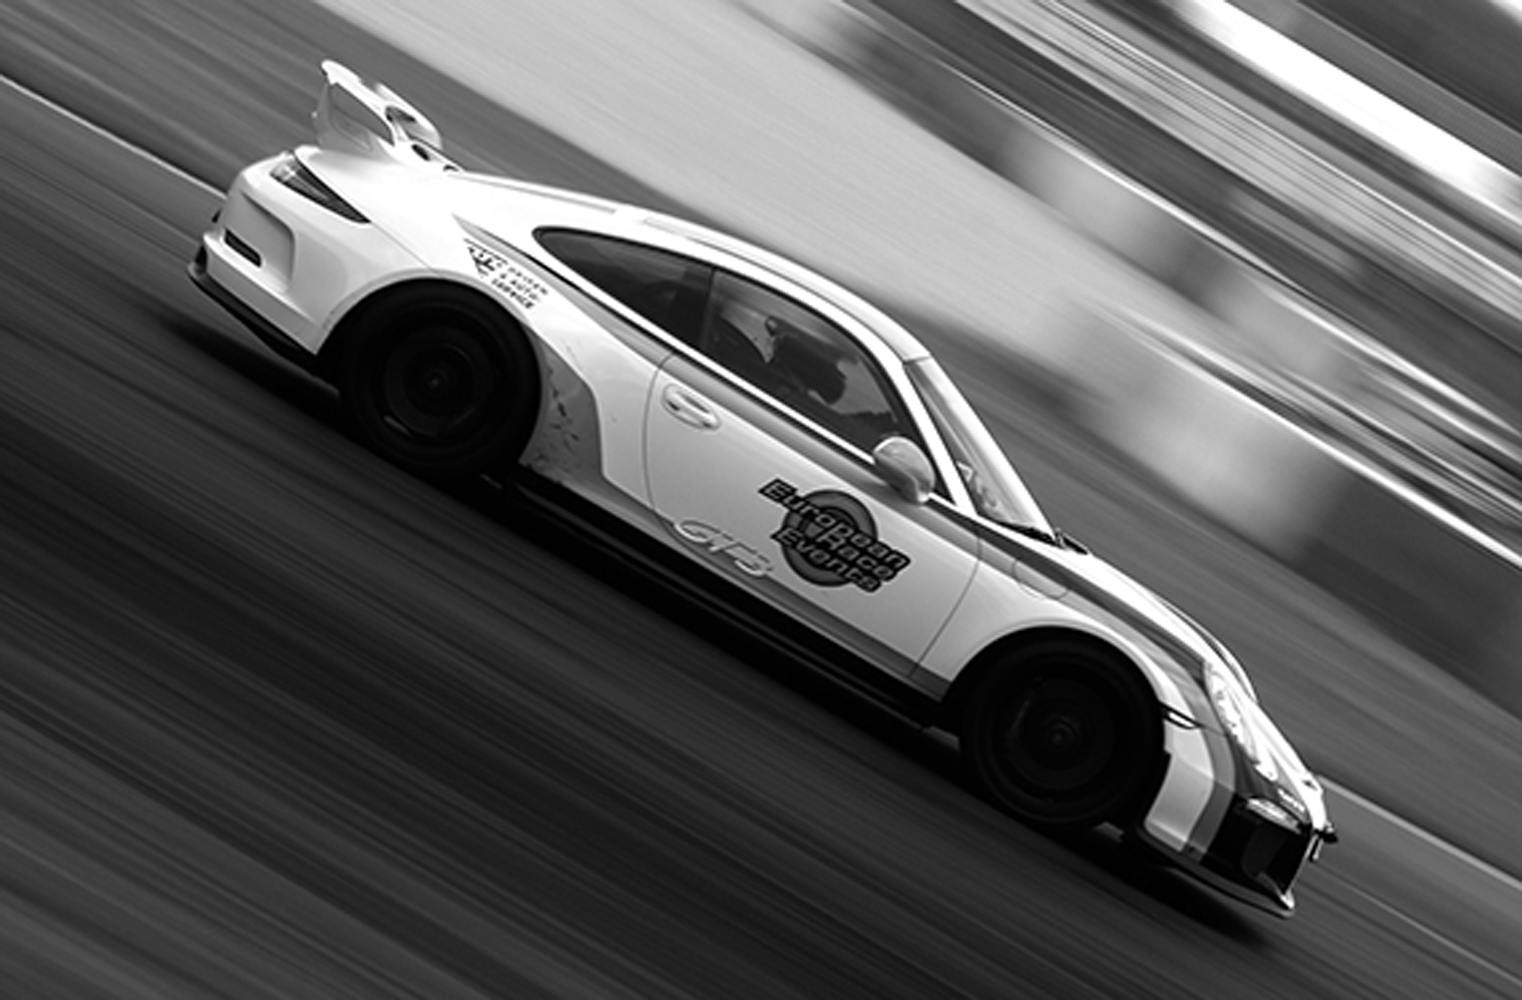 Porsche 991 GT3 Clubsport fahren | 3 Runden Rennstrecke